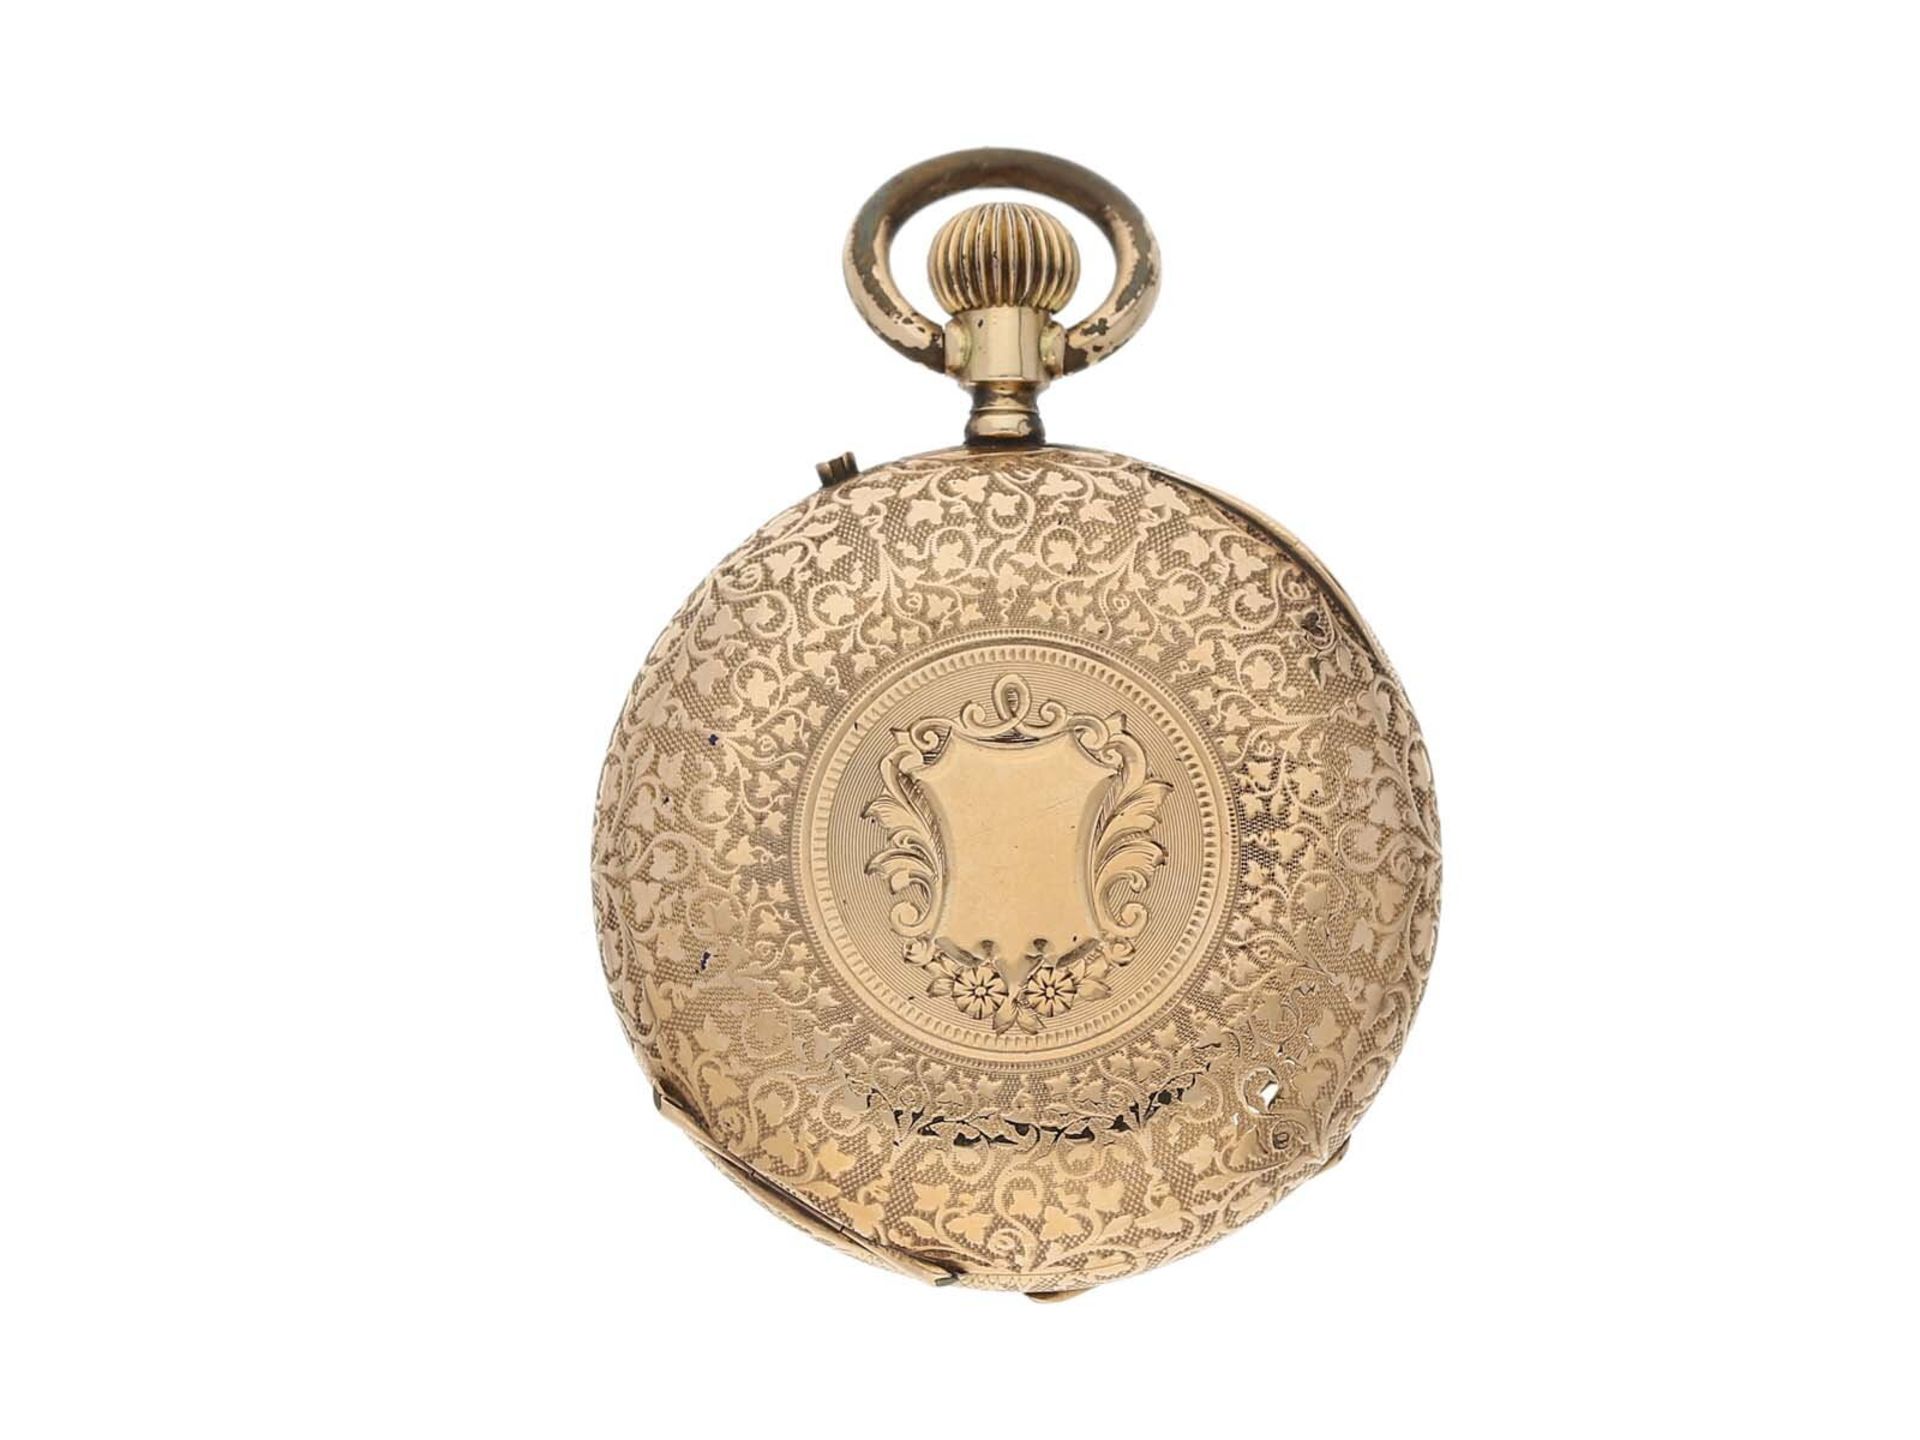 Taschenuhr: goldene Damenuhr um 1900 und seltene goldene Uhrenkette mit goldenem Kompass, ca.1900 - Bild 2 aus 3